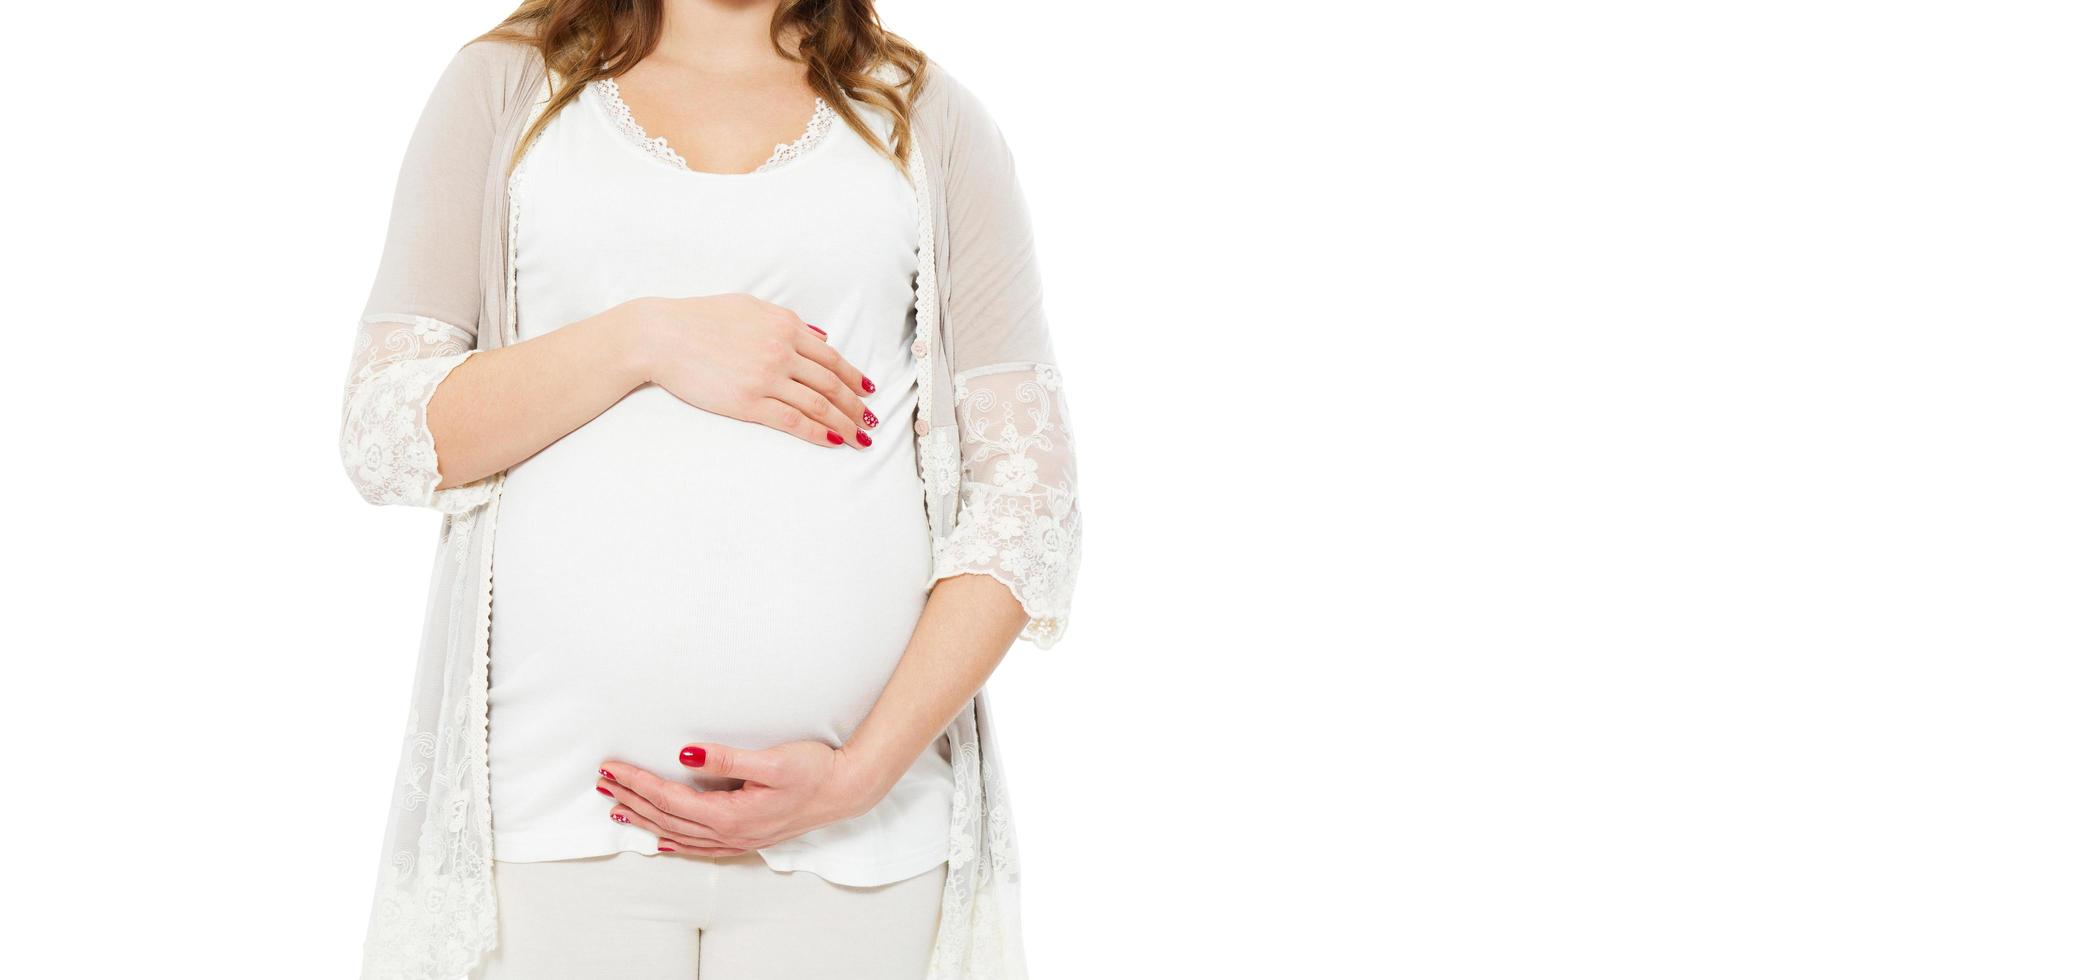 zwangere vrouw houdt handen op buik op een witte achtergrond. zwangerschap, moederschap, voorbereiding en verwachtingsconcept. close-up, kopieer ruimte, binnenshuis. mooie tedere sfeerfoto van zwangerschap. foto